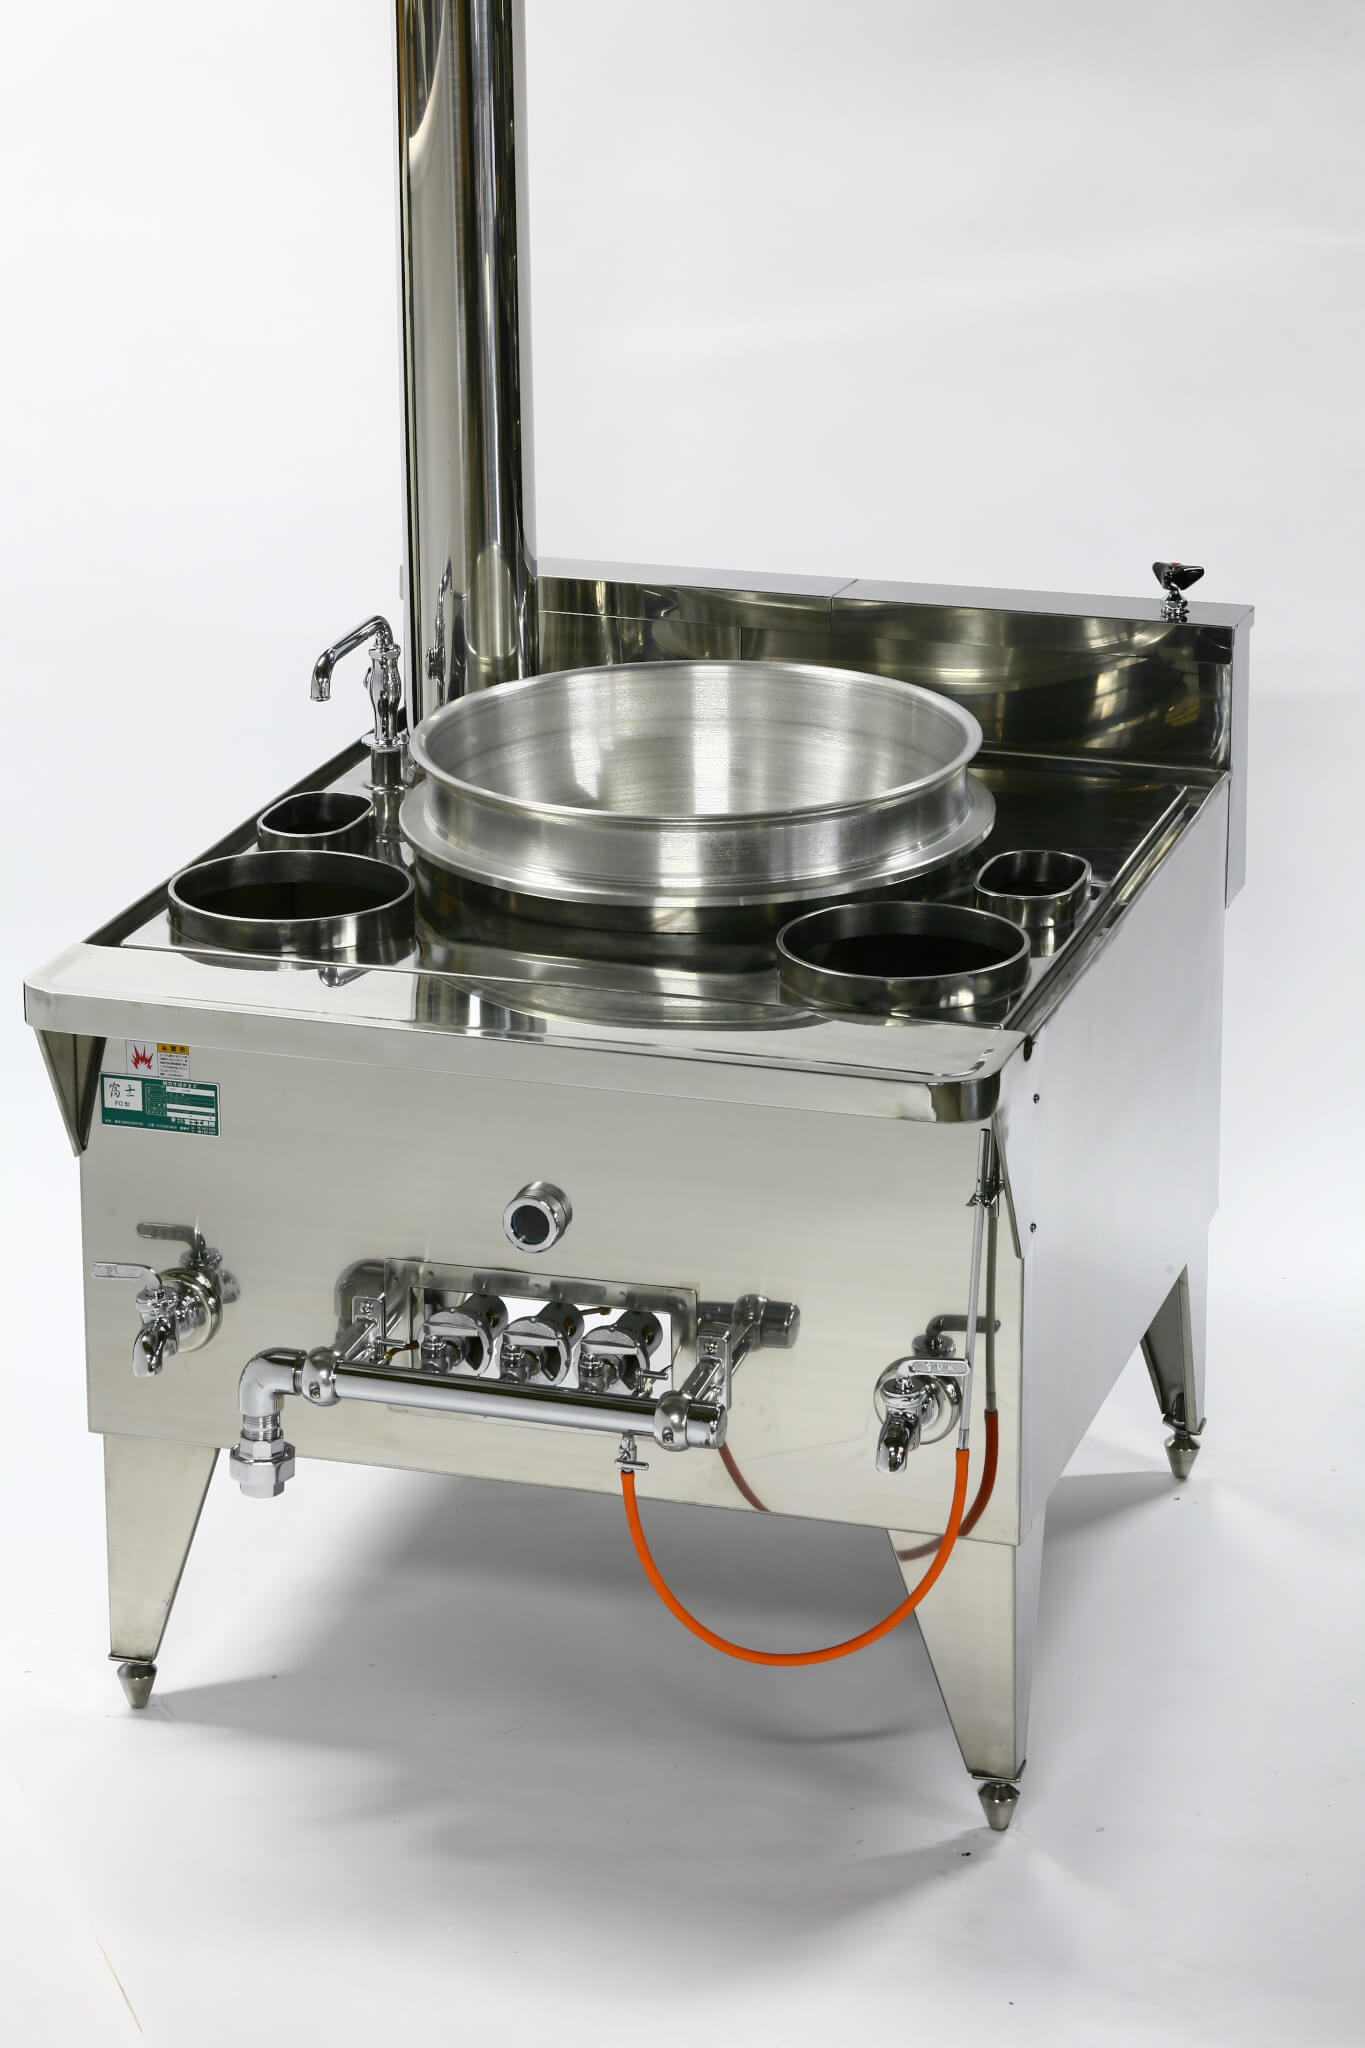 66%OFF!】 三省堂実業涼厨角槽型ゆで麺機 厨房機器 調理機器 MRY-03 W255 D700 H800 mm